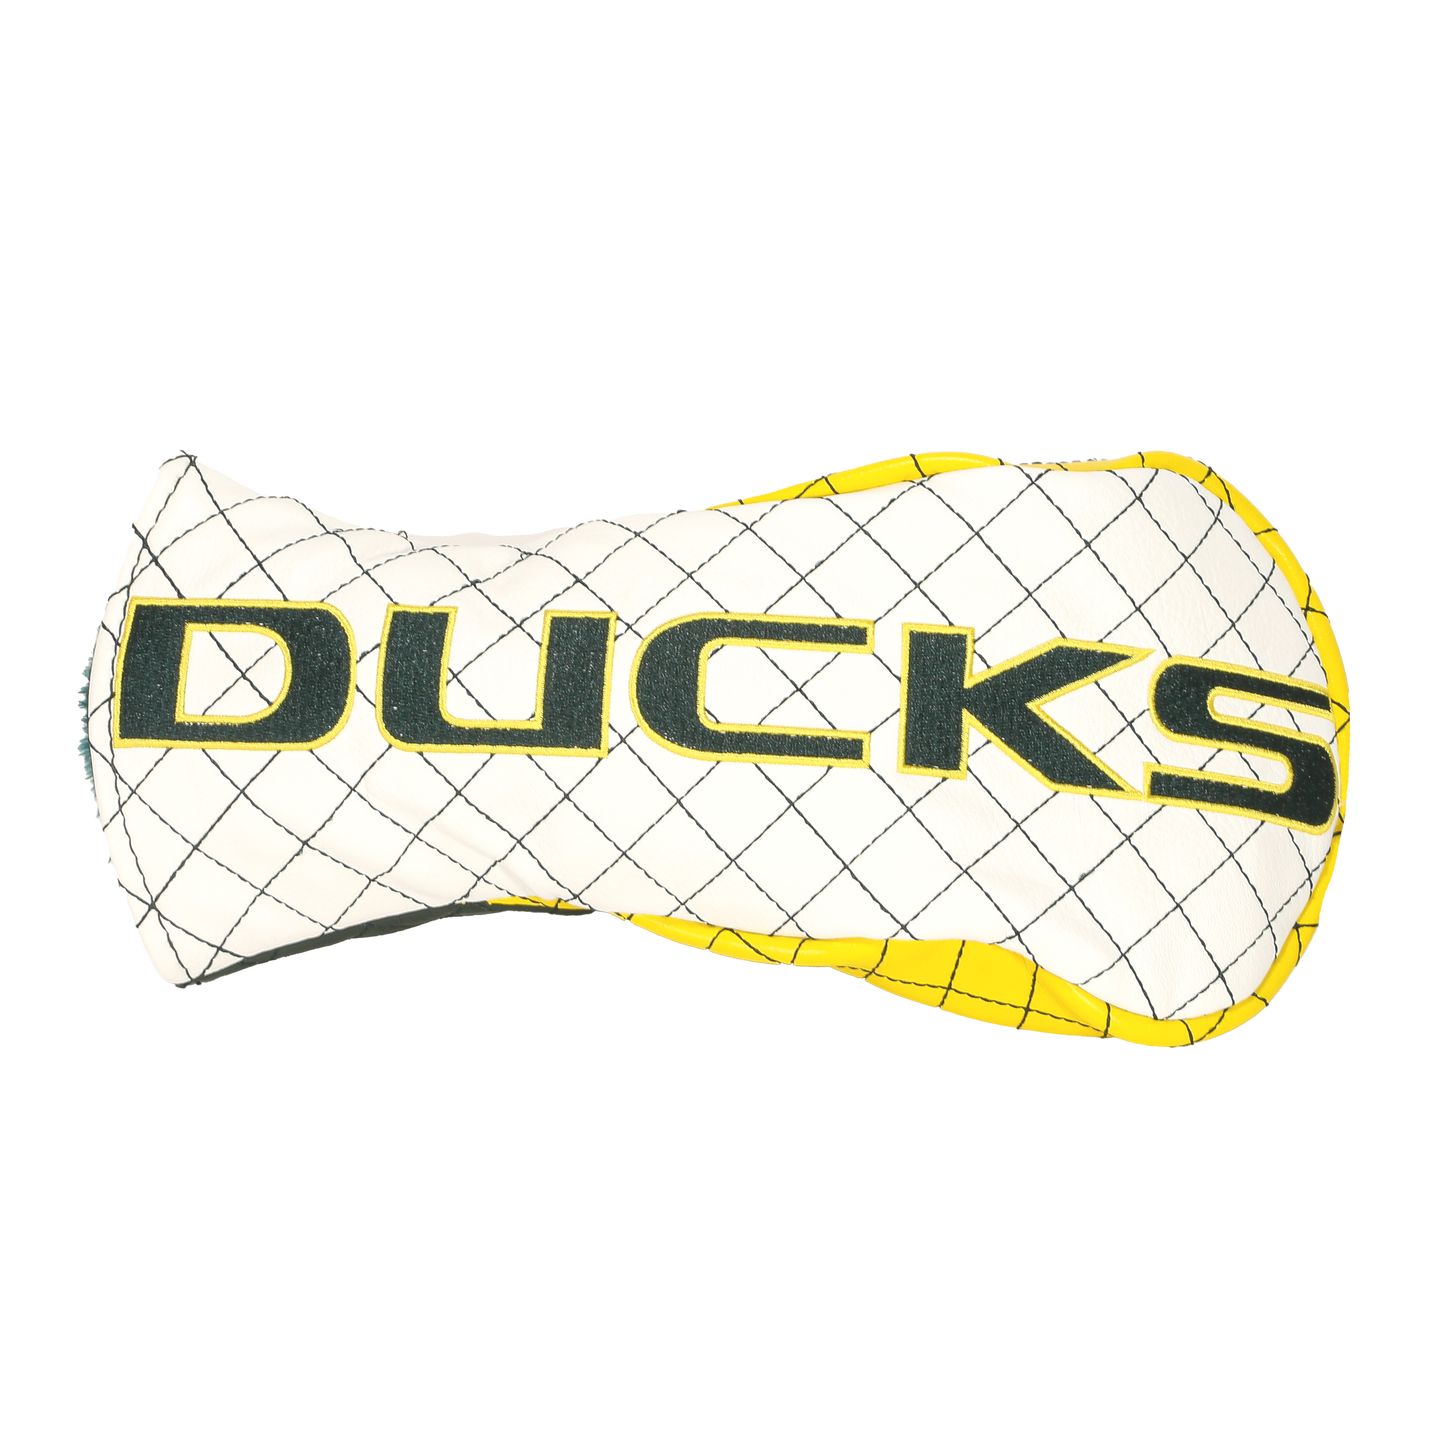 Oregon "Ducks" Fairway Cover